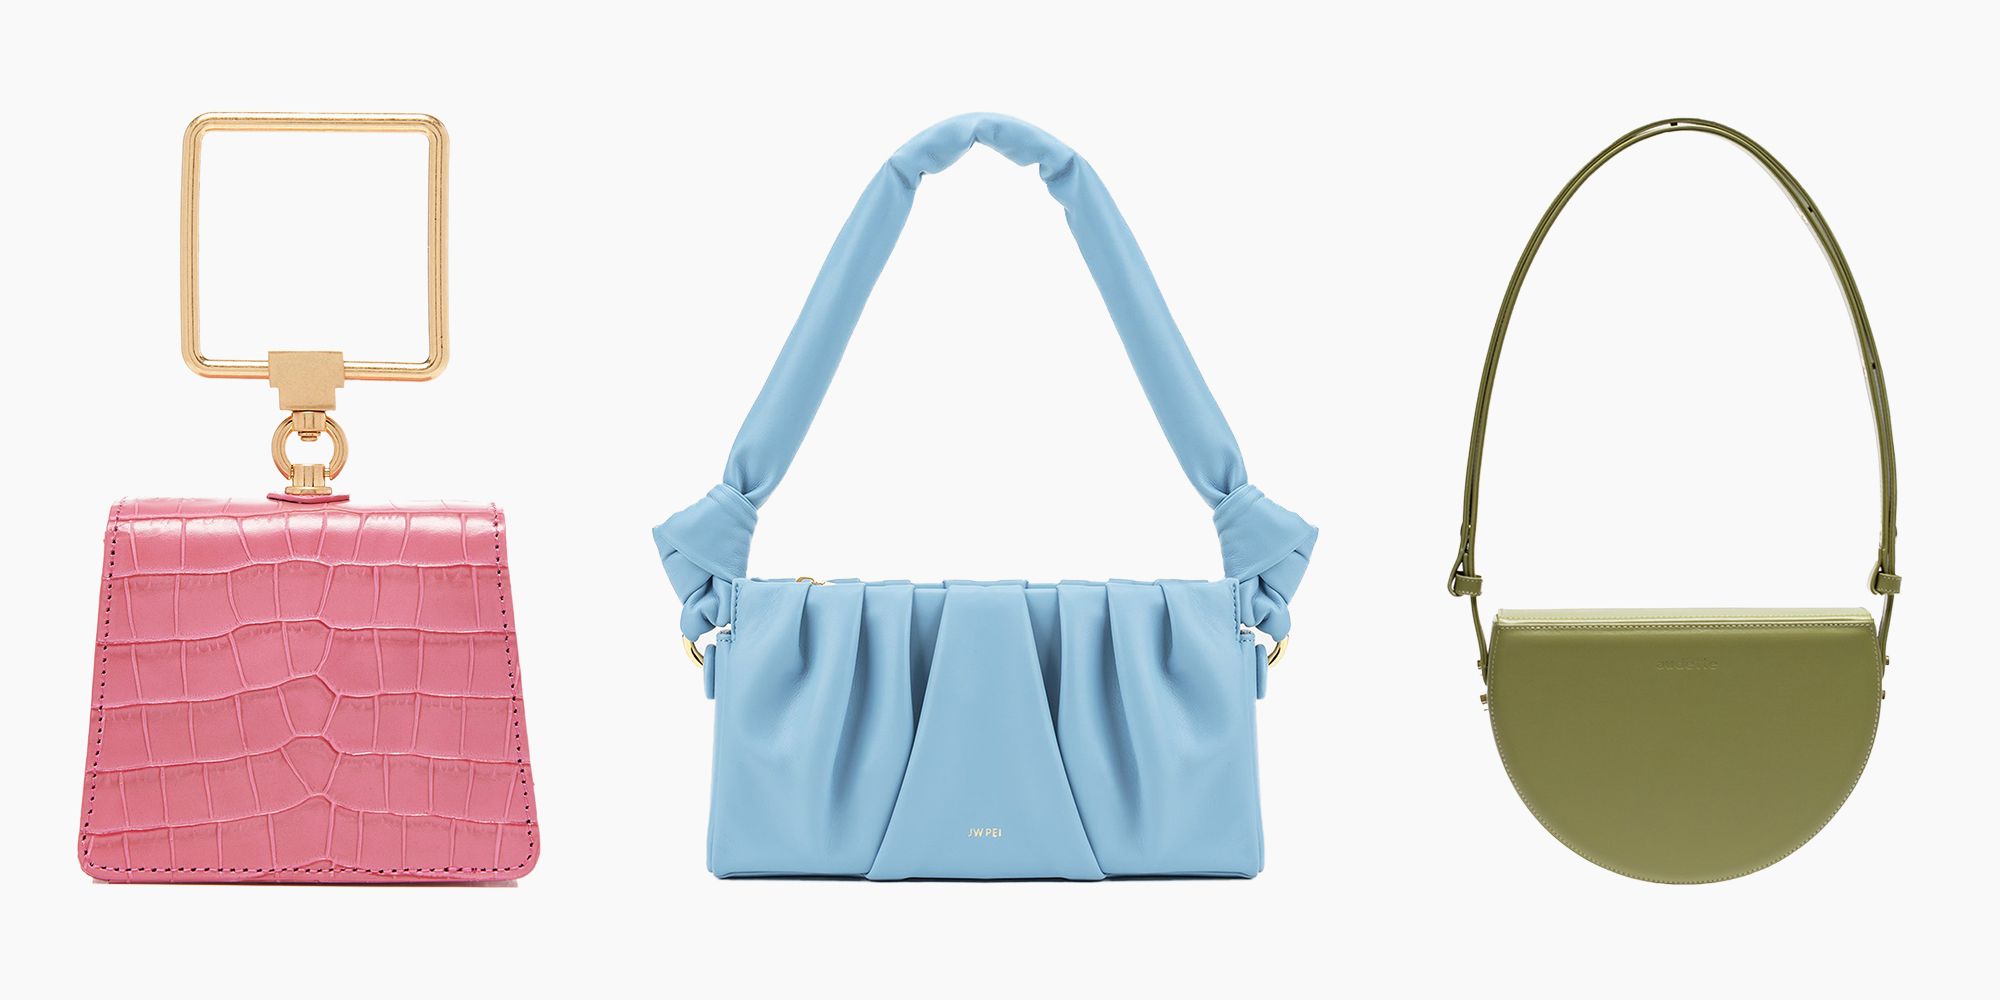 Blue Handmade Unique Design Evening Handbags for Chic Women